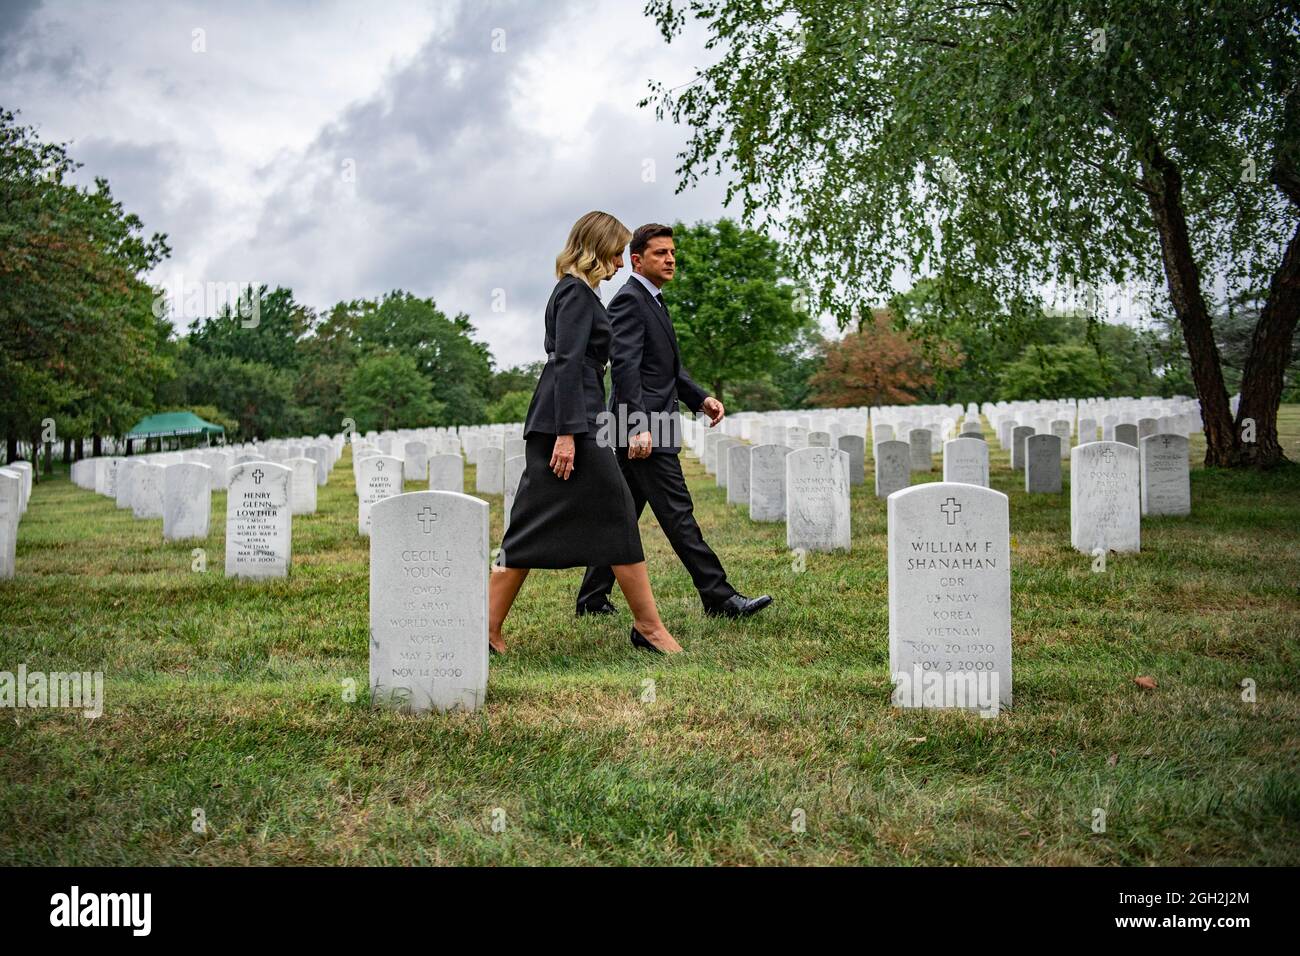 La première dame de l'Ukraine, Olena Zelenska, à gauche, et le président ukrainien, Volodymyr Zelenskyy, traversent la section 65 du cimetière national d'Arlington le 1er septembre 2021 à Arlington, en Virginie. Zelenskyy a visité les tombes de plusieurs membres du service polonais américain. Banque D'Images